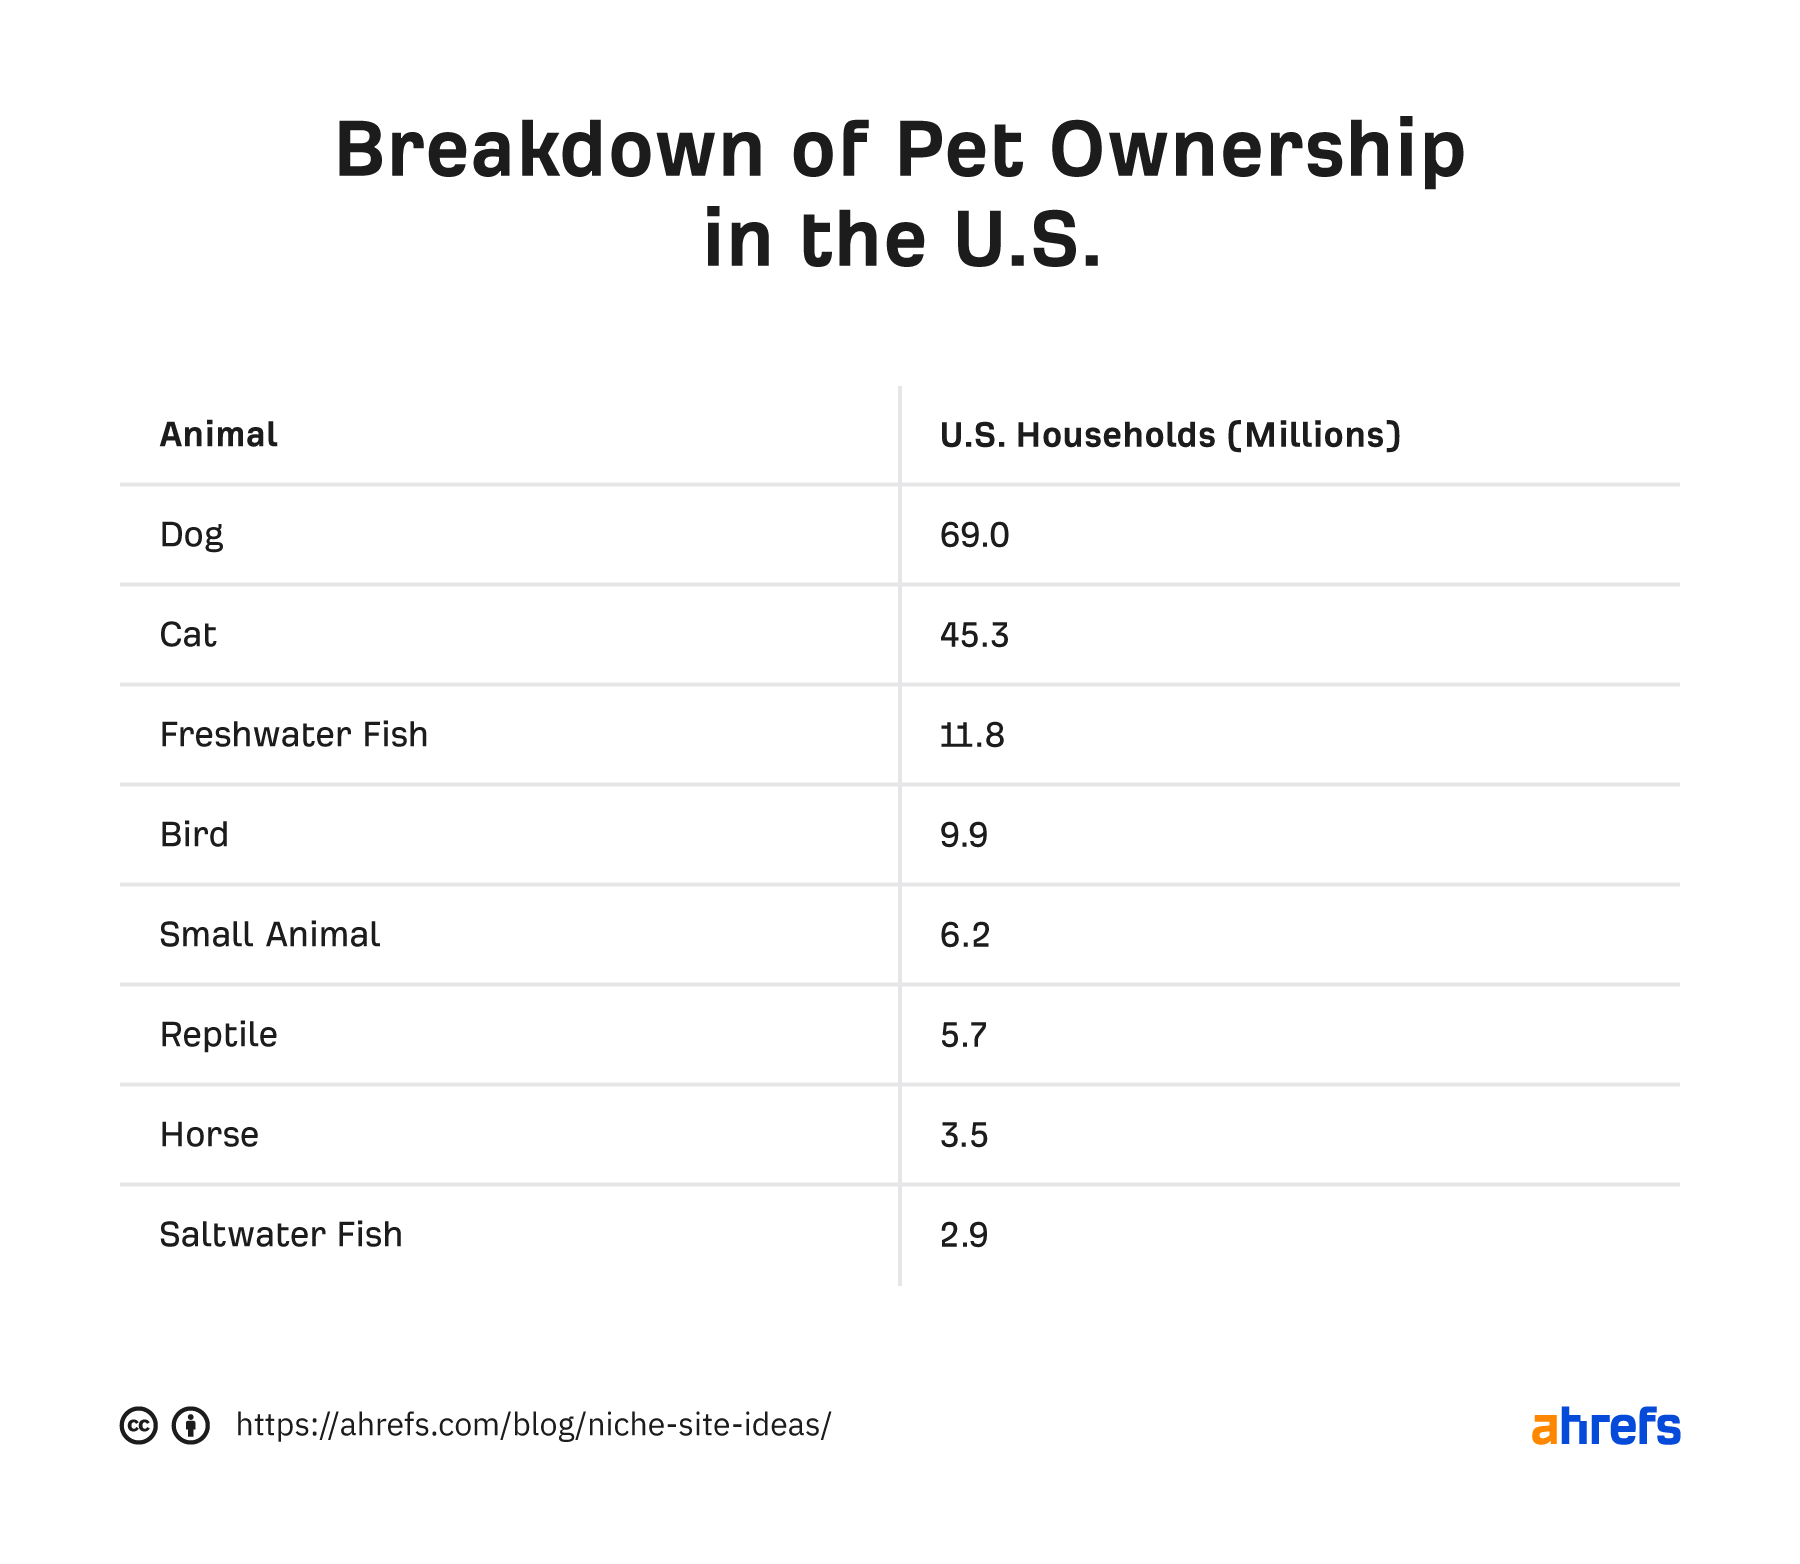 Breakdown of pet ownership in the U.S. 